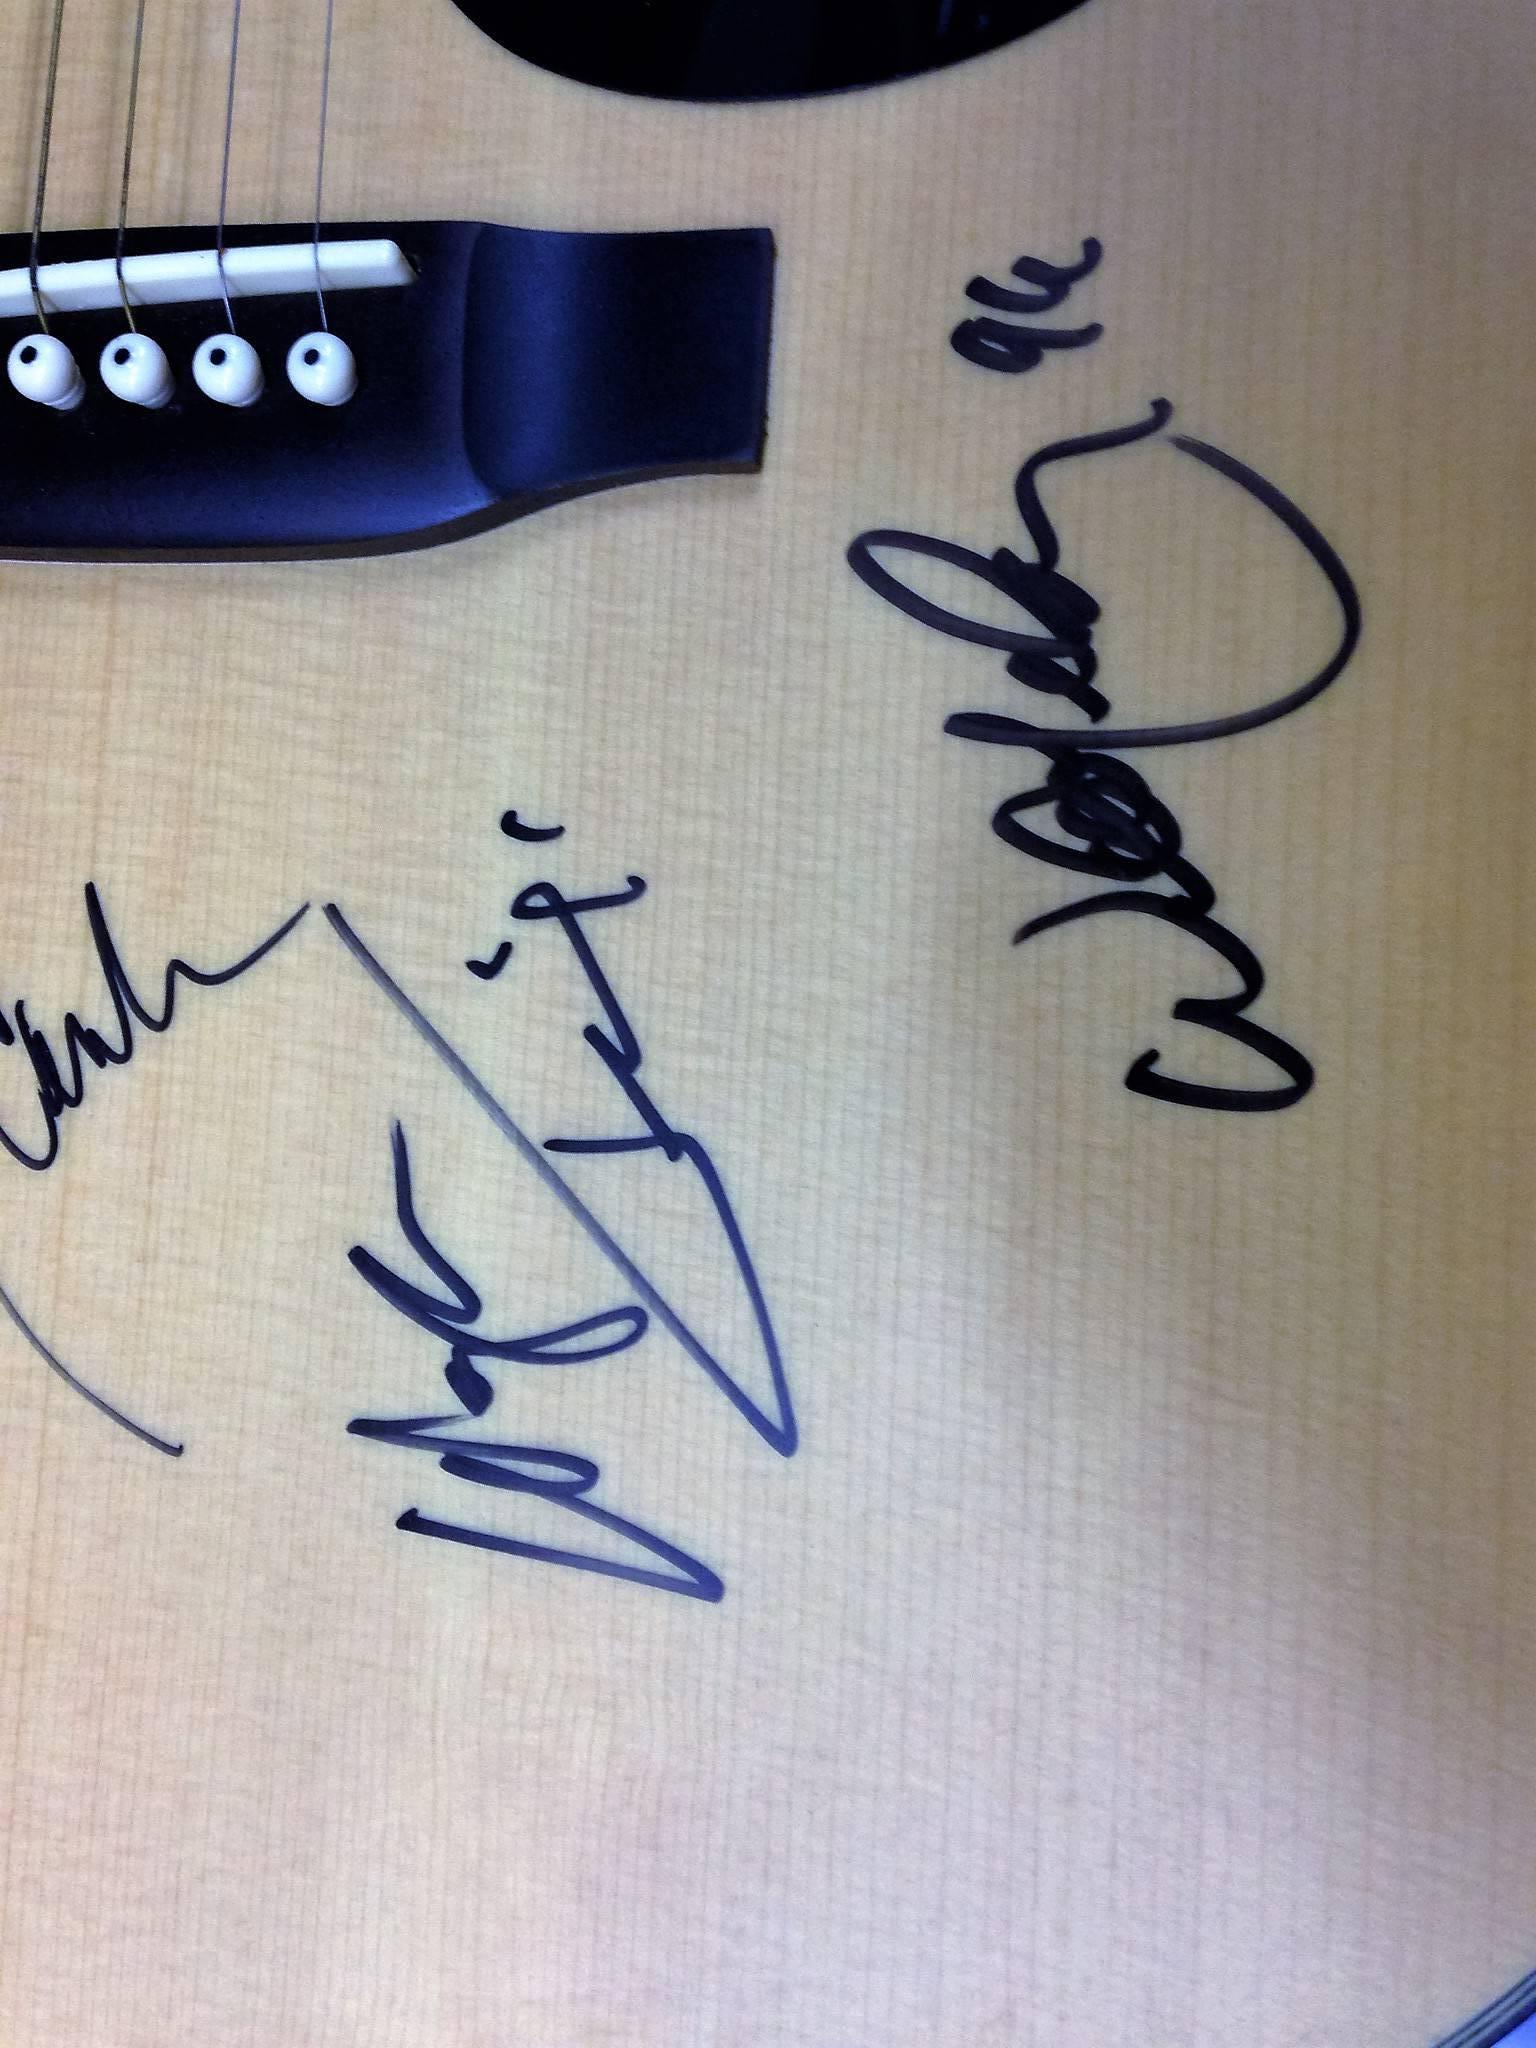 johnny cash signed guitar for sale